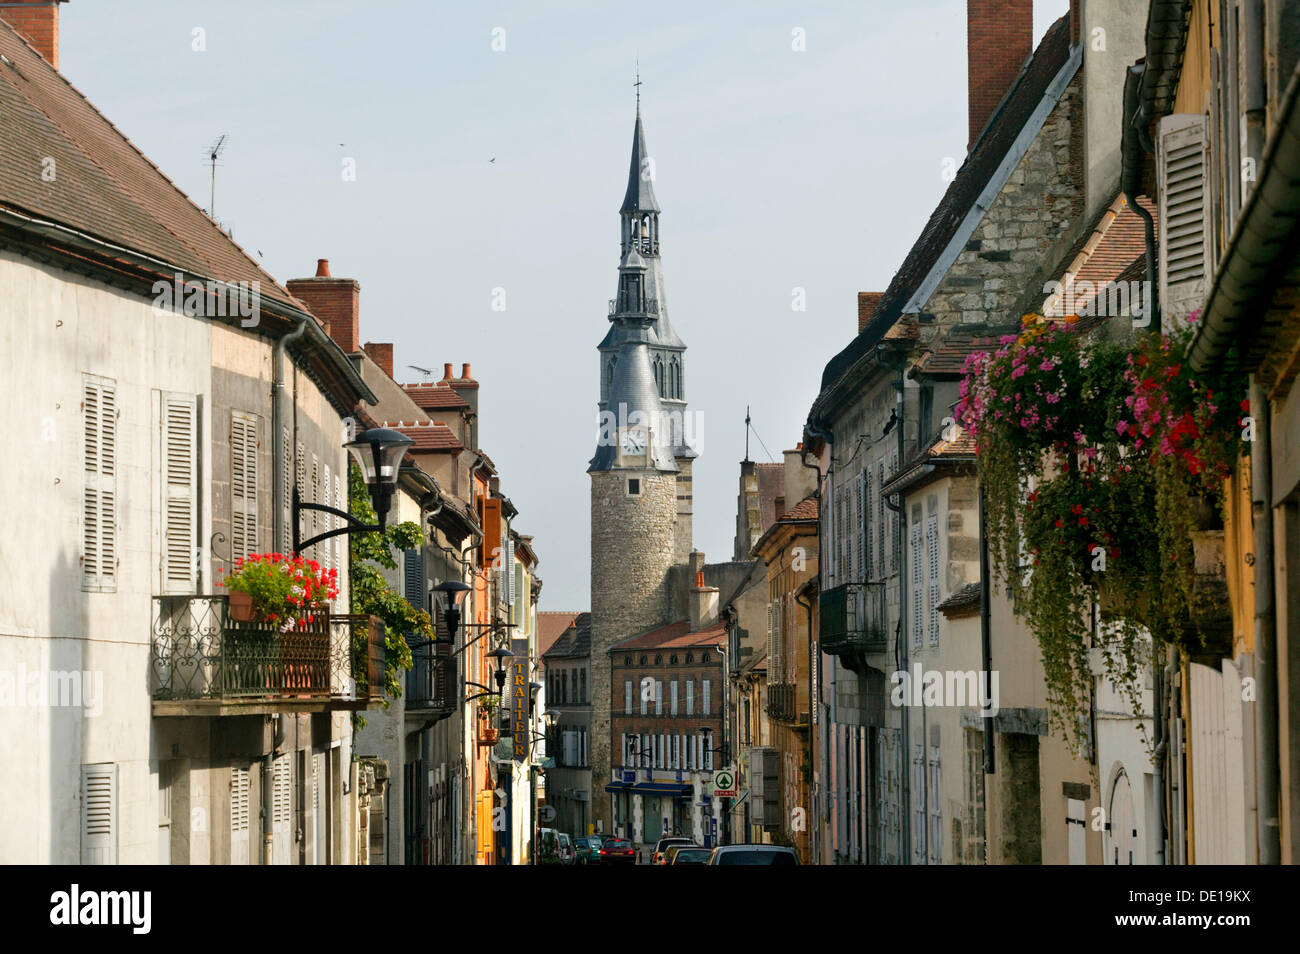 Town of Saint Pourcain, Cote d'Auvergne, Bourbonnais, Allier, France, Europe Stock Photo